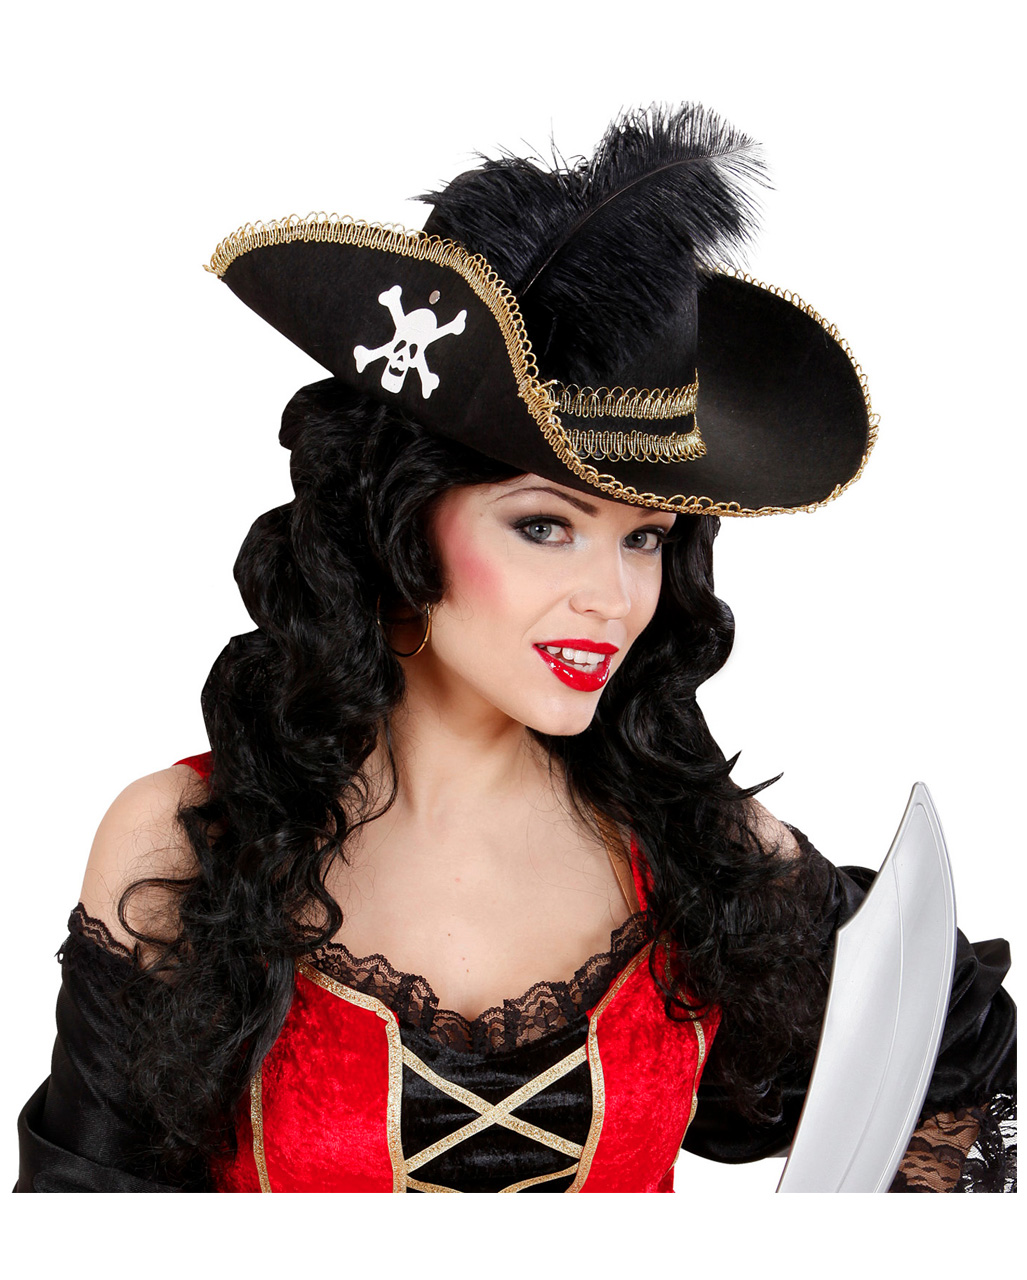 Convient Parfaitement pour Carnaval & soirée Pirates NET TOYS Bague très Tendance tête de Mort avec os Or-Argenté Accessoire Scintillant Unisexe pour Costume de Pirate Skull 